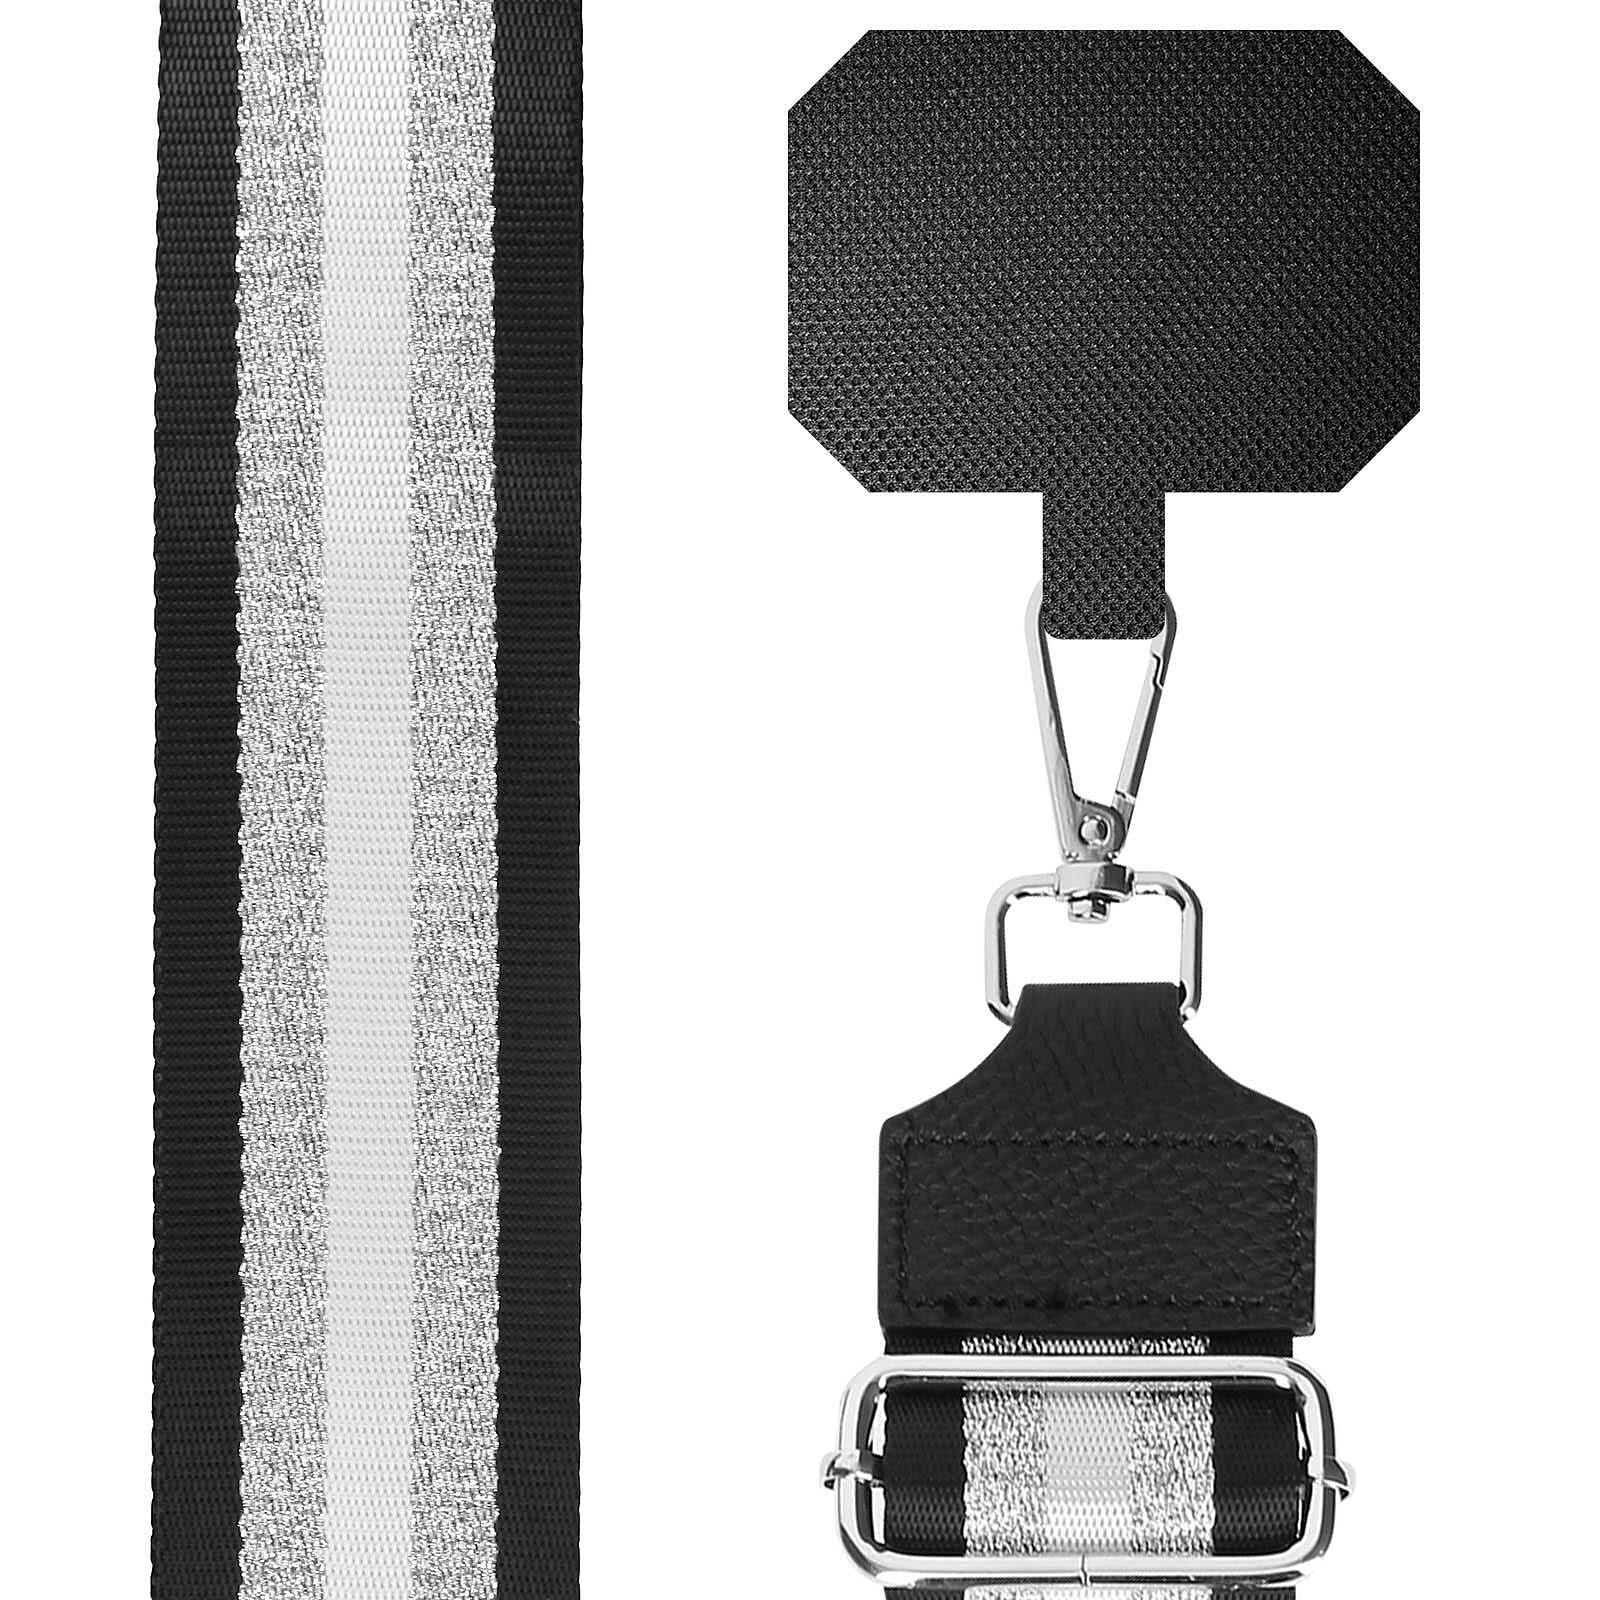 Avizar Micro-cravate Jack 3.5mm Enregistrement Audio avec Réduction de  bruit - Noir - Accessoires divers smartphone - LDLC